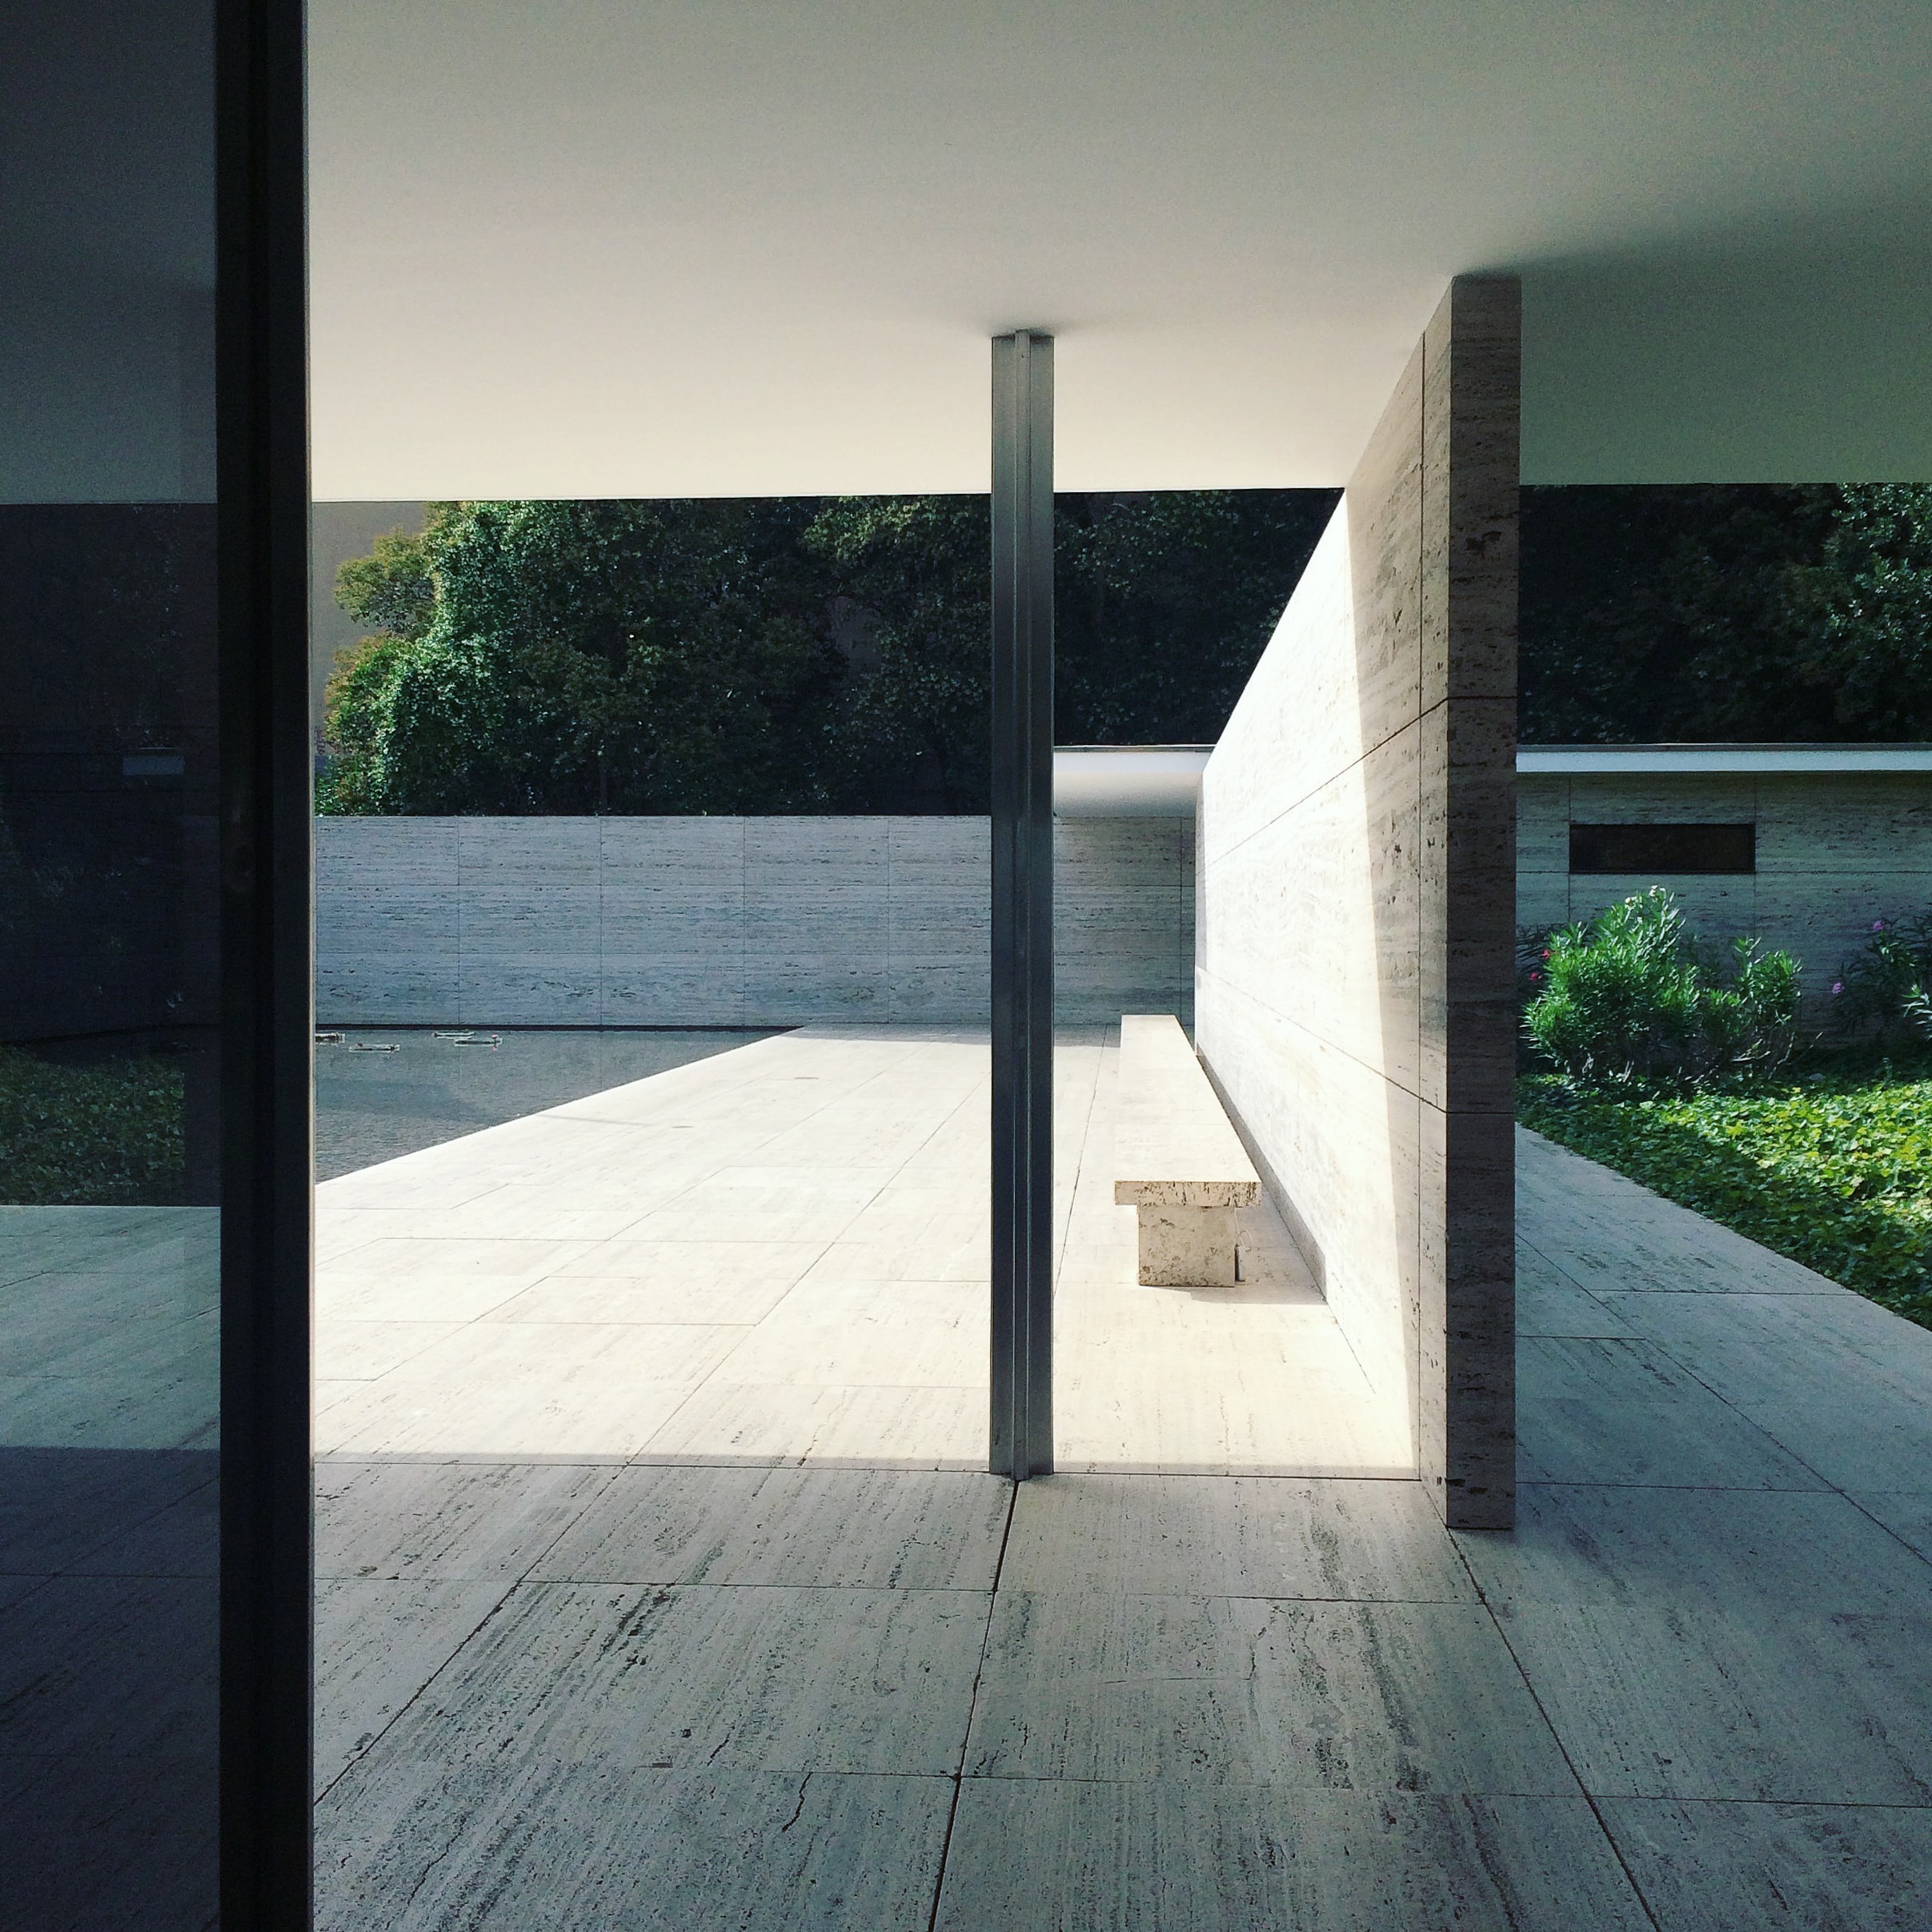 Arquitectura y minimalismo, la armonía visual de la filosofía ‘menos es más’